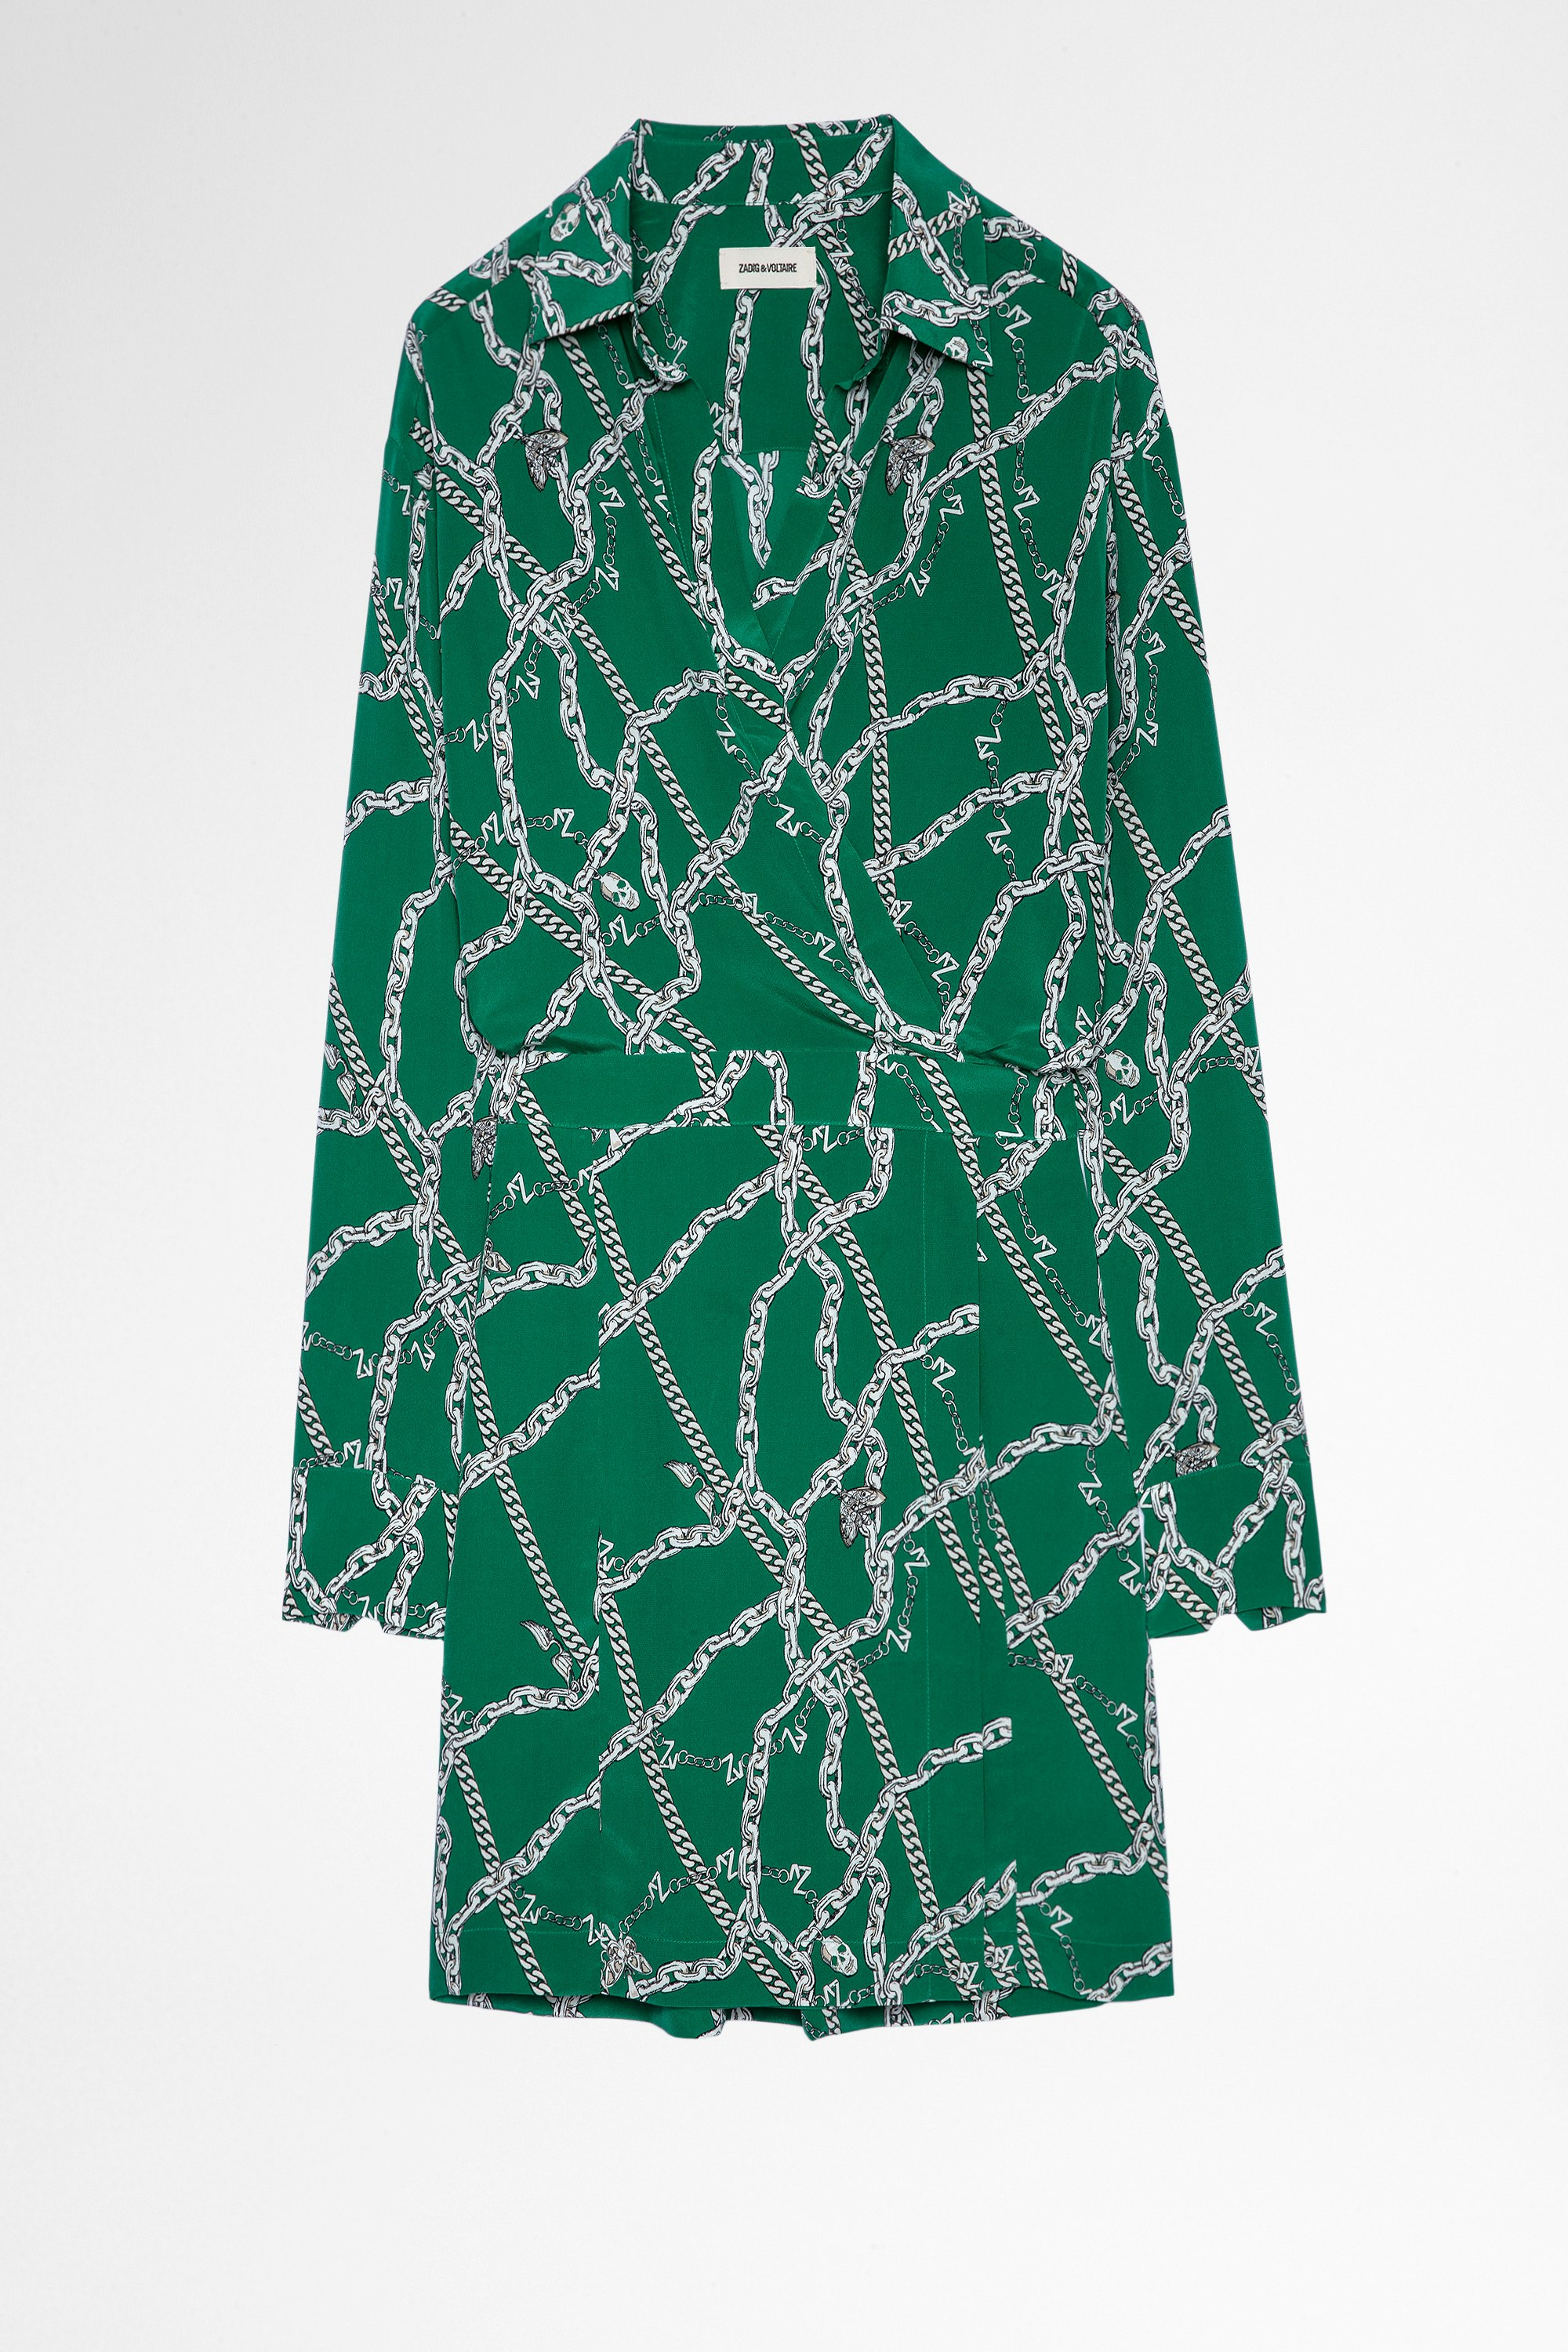 Kleid Ravy Seide Damenkleid aus grüner Seide mit Kettenmotiven